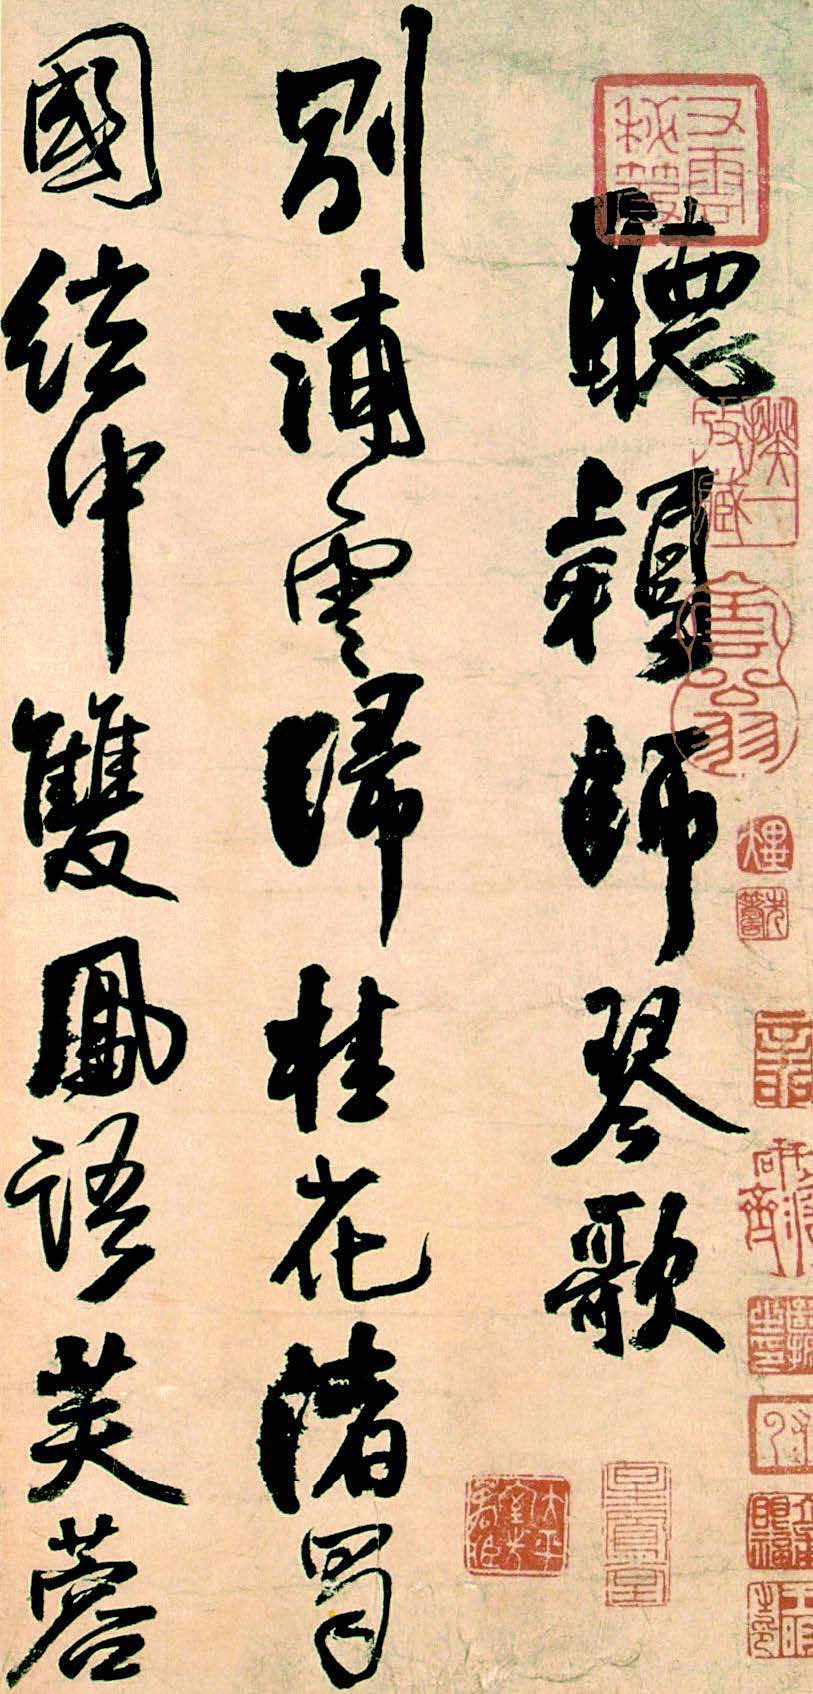 涨墨示例：《听颖师琴歌》（局部）。王铎，清代，1640 年。纸本，纵32厘米，横89厘米，台北私人藏。